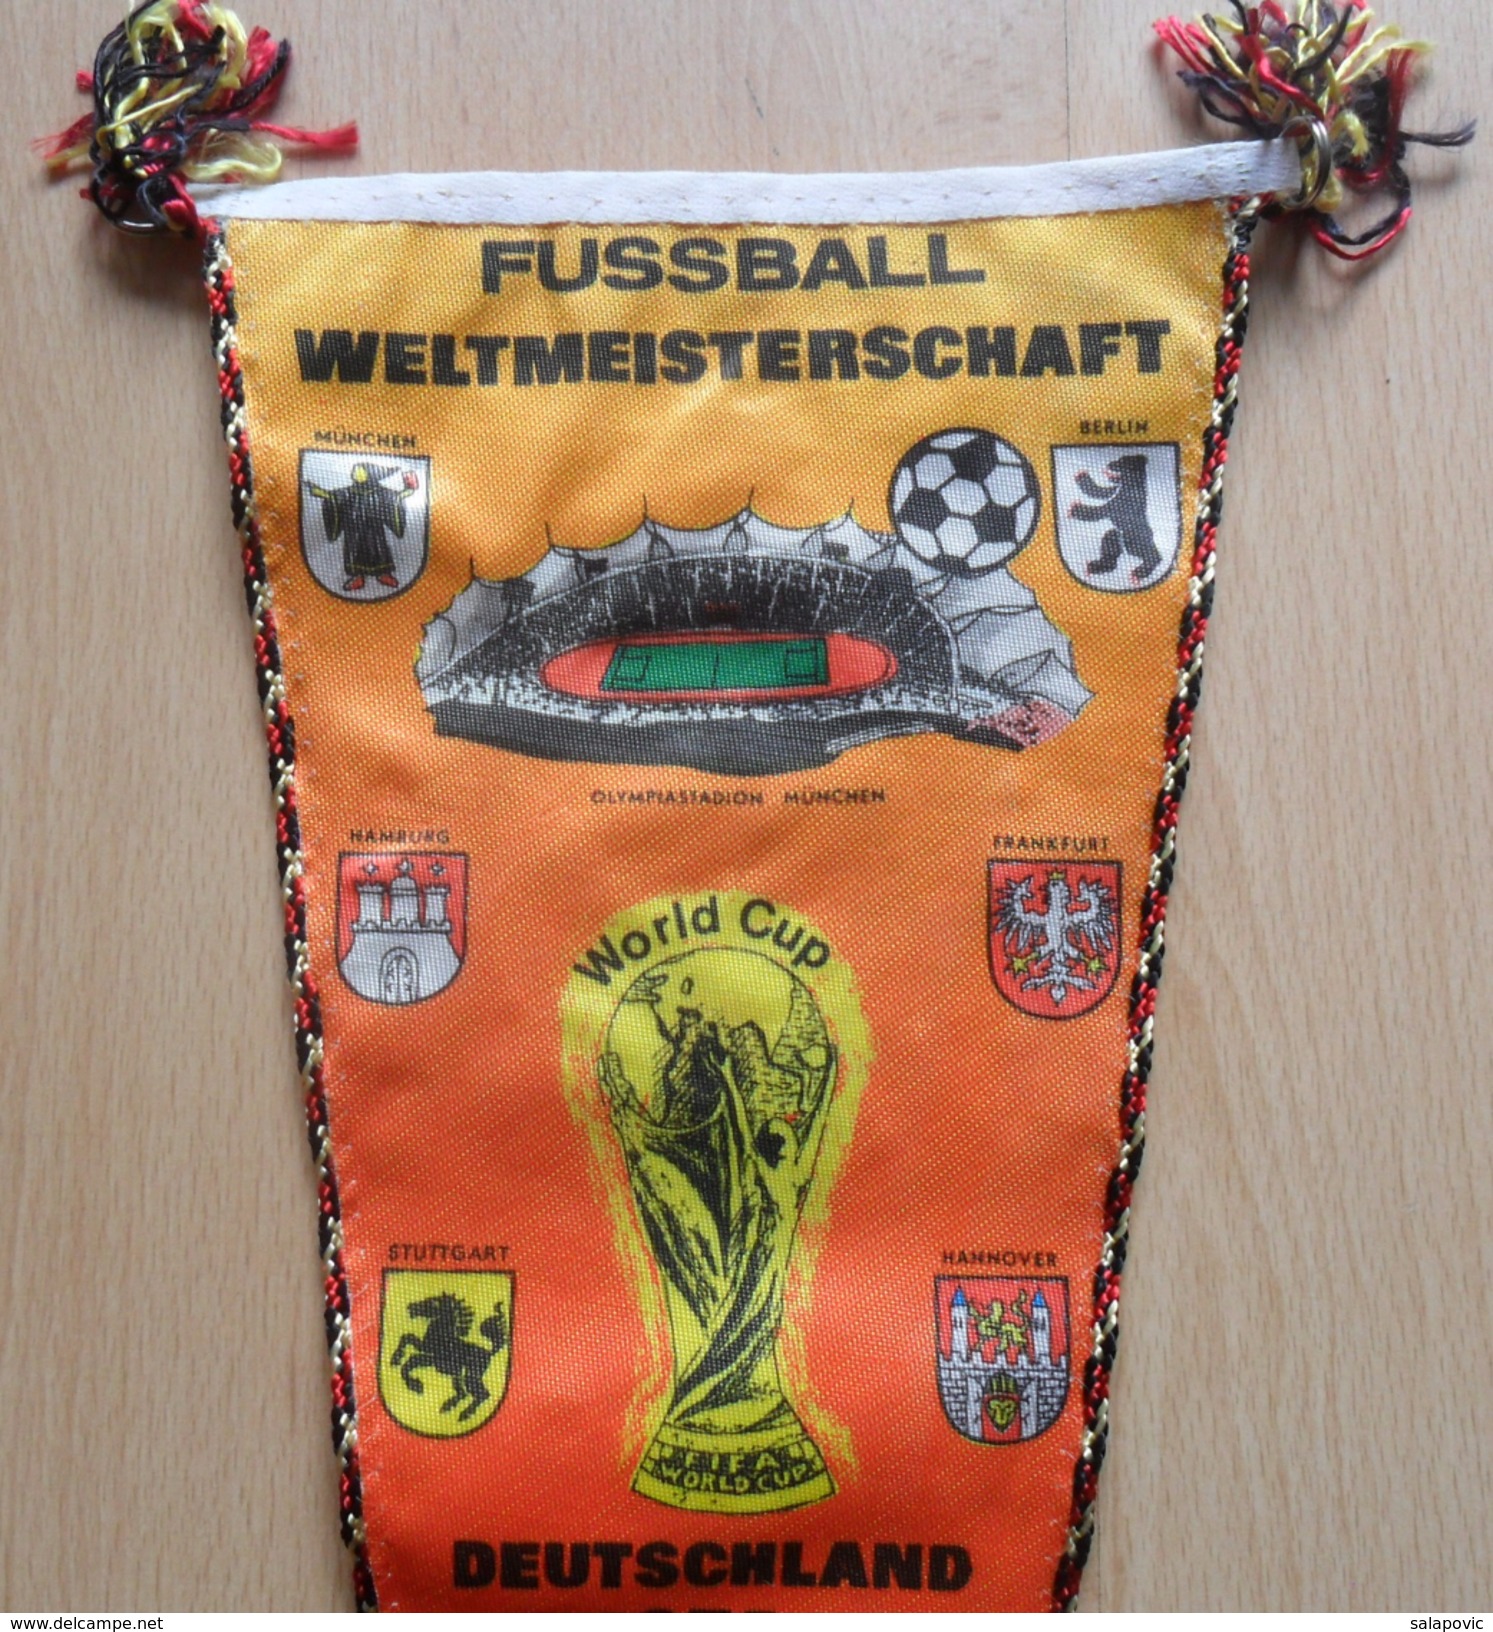 FUßBALL WELTMEISTERSCHAFT DEUTSCHLAND 1974, FOOTBALL WORLD CHAMPIONSHIP GERMANY 1974 OLD PENNANT - Bekleidung, Souvenirs Und Sonstige